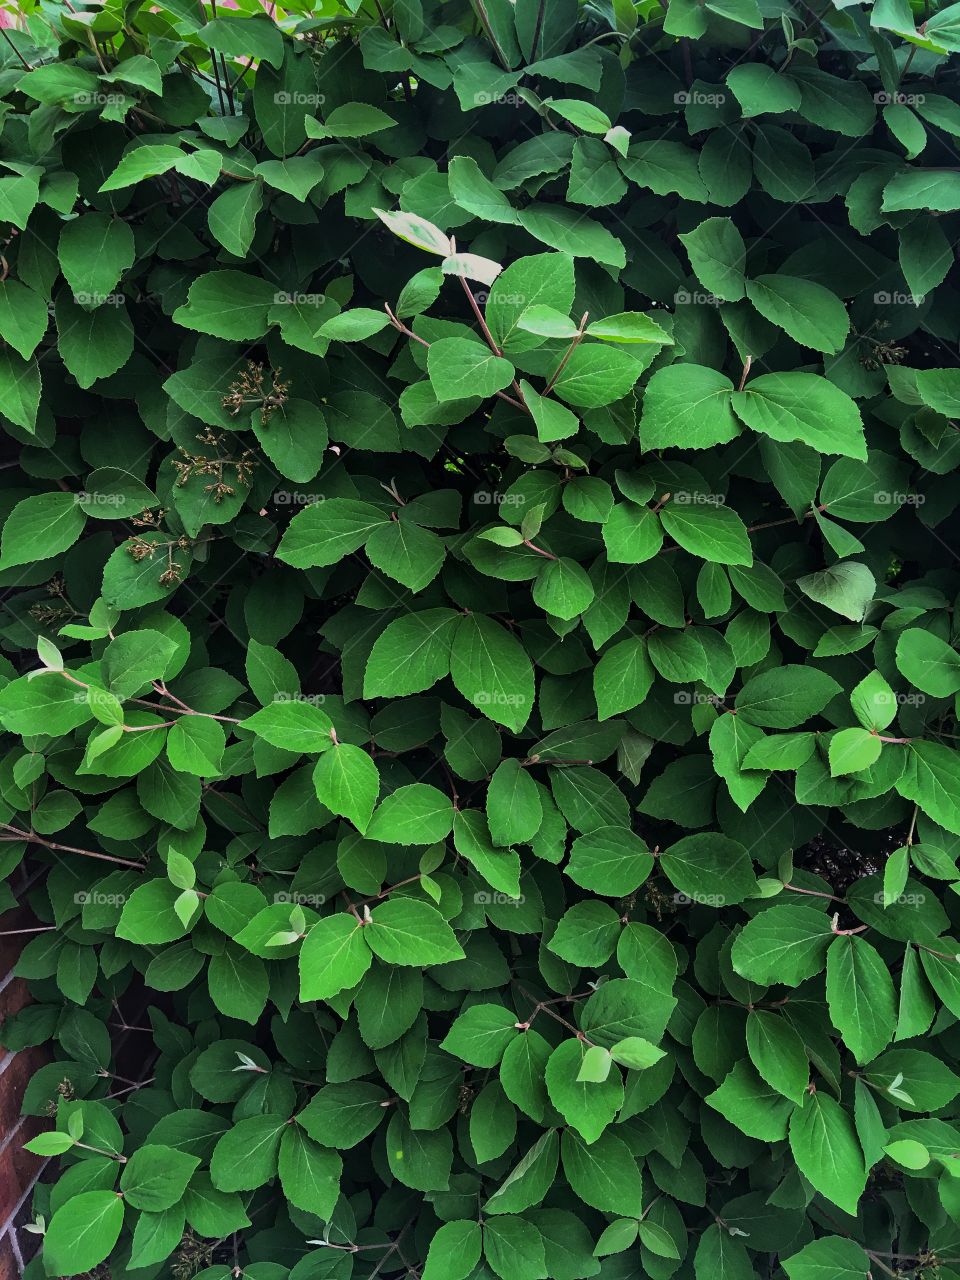 Pleasing Wall of dark green leaves